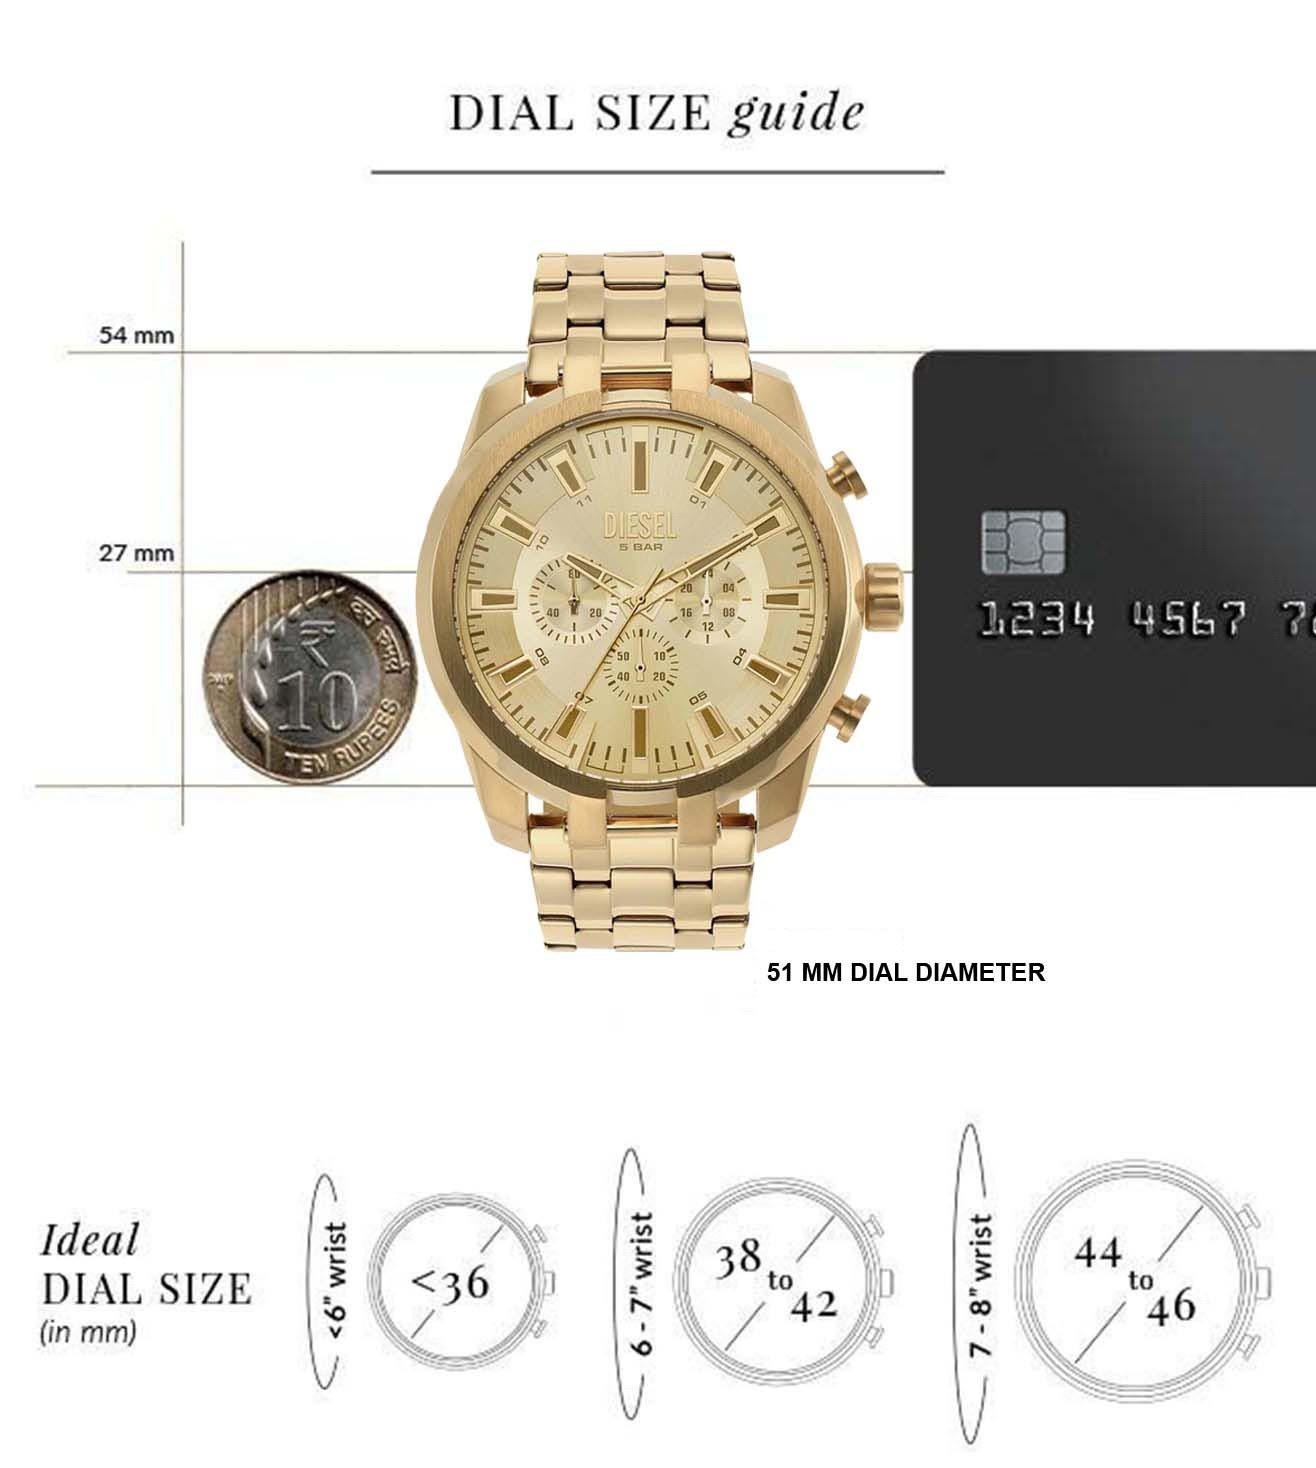 DZ4590 | DIESEL Split Chronograph Watch for Men